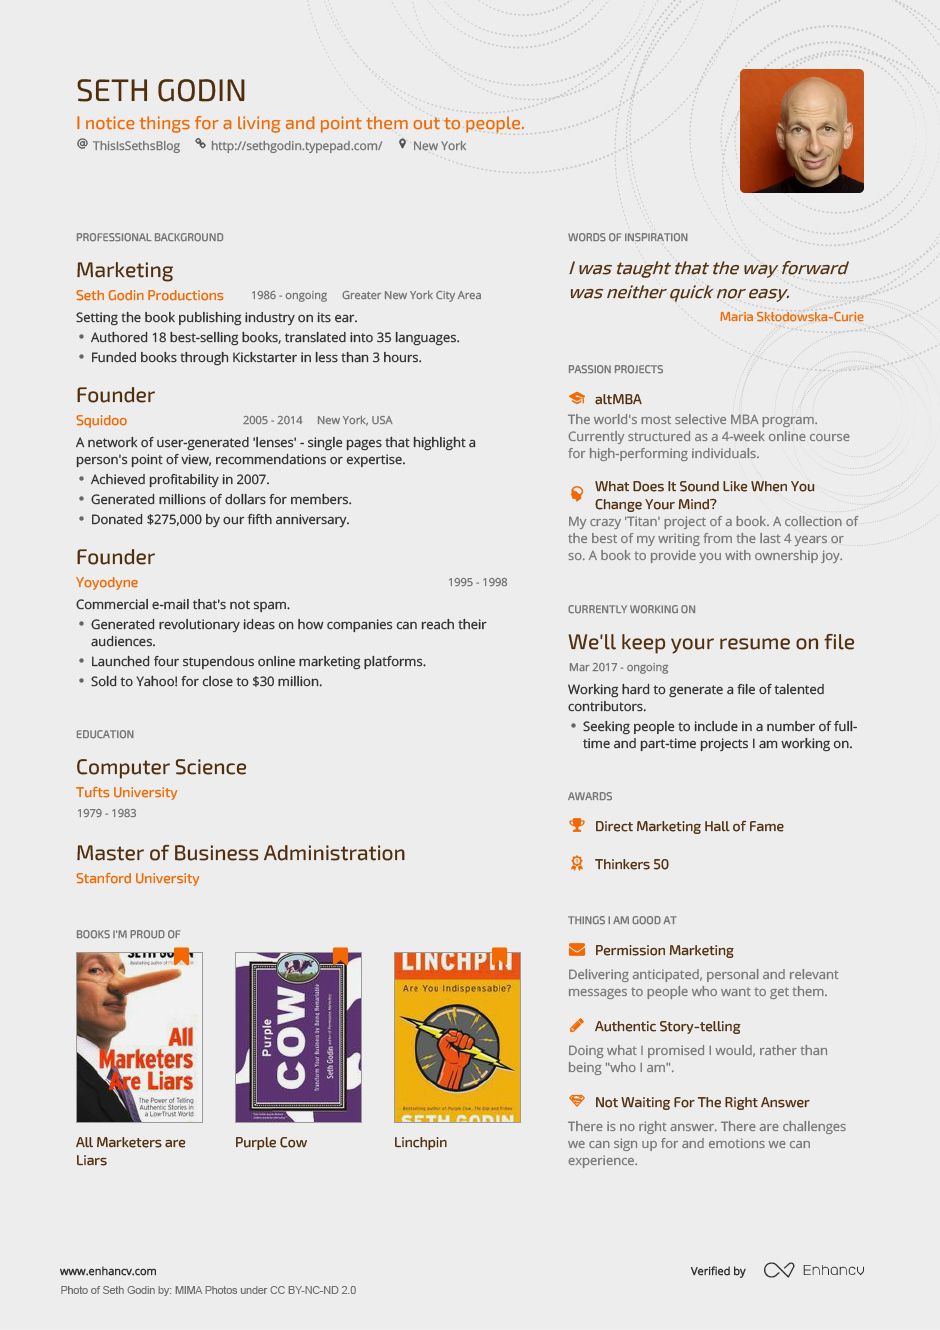 Seth Godin resume by Enhancv